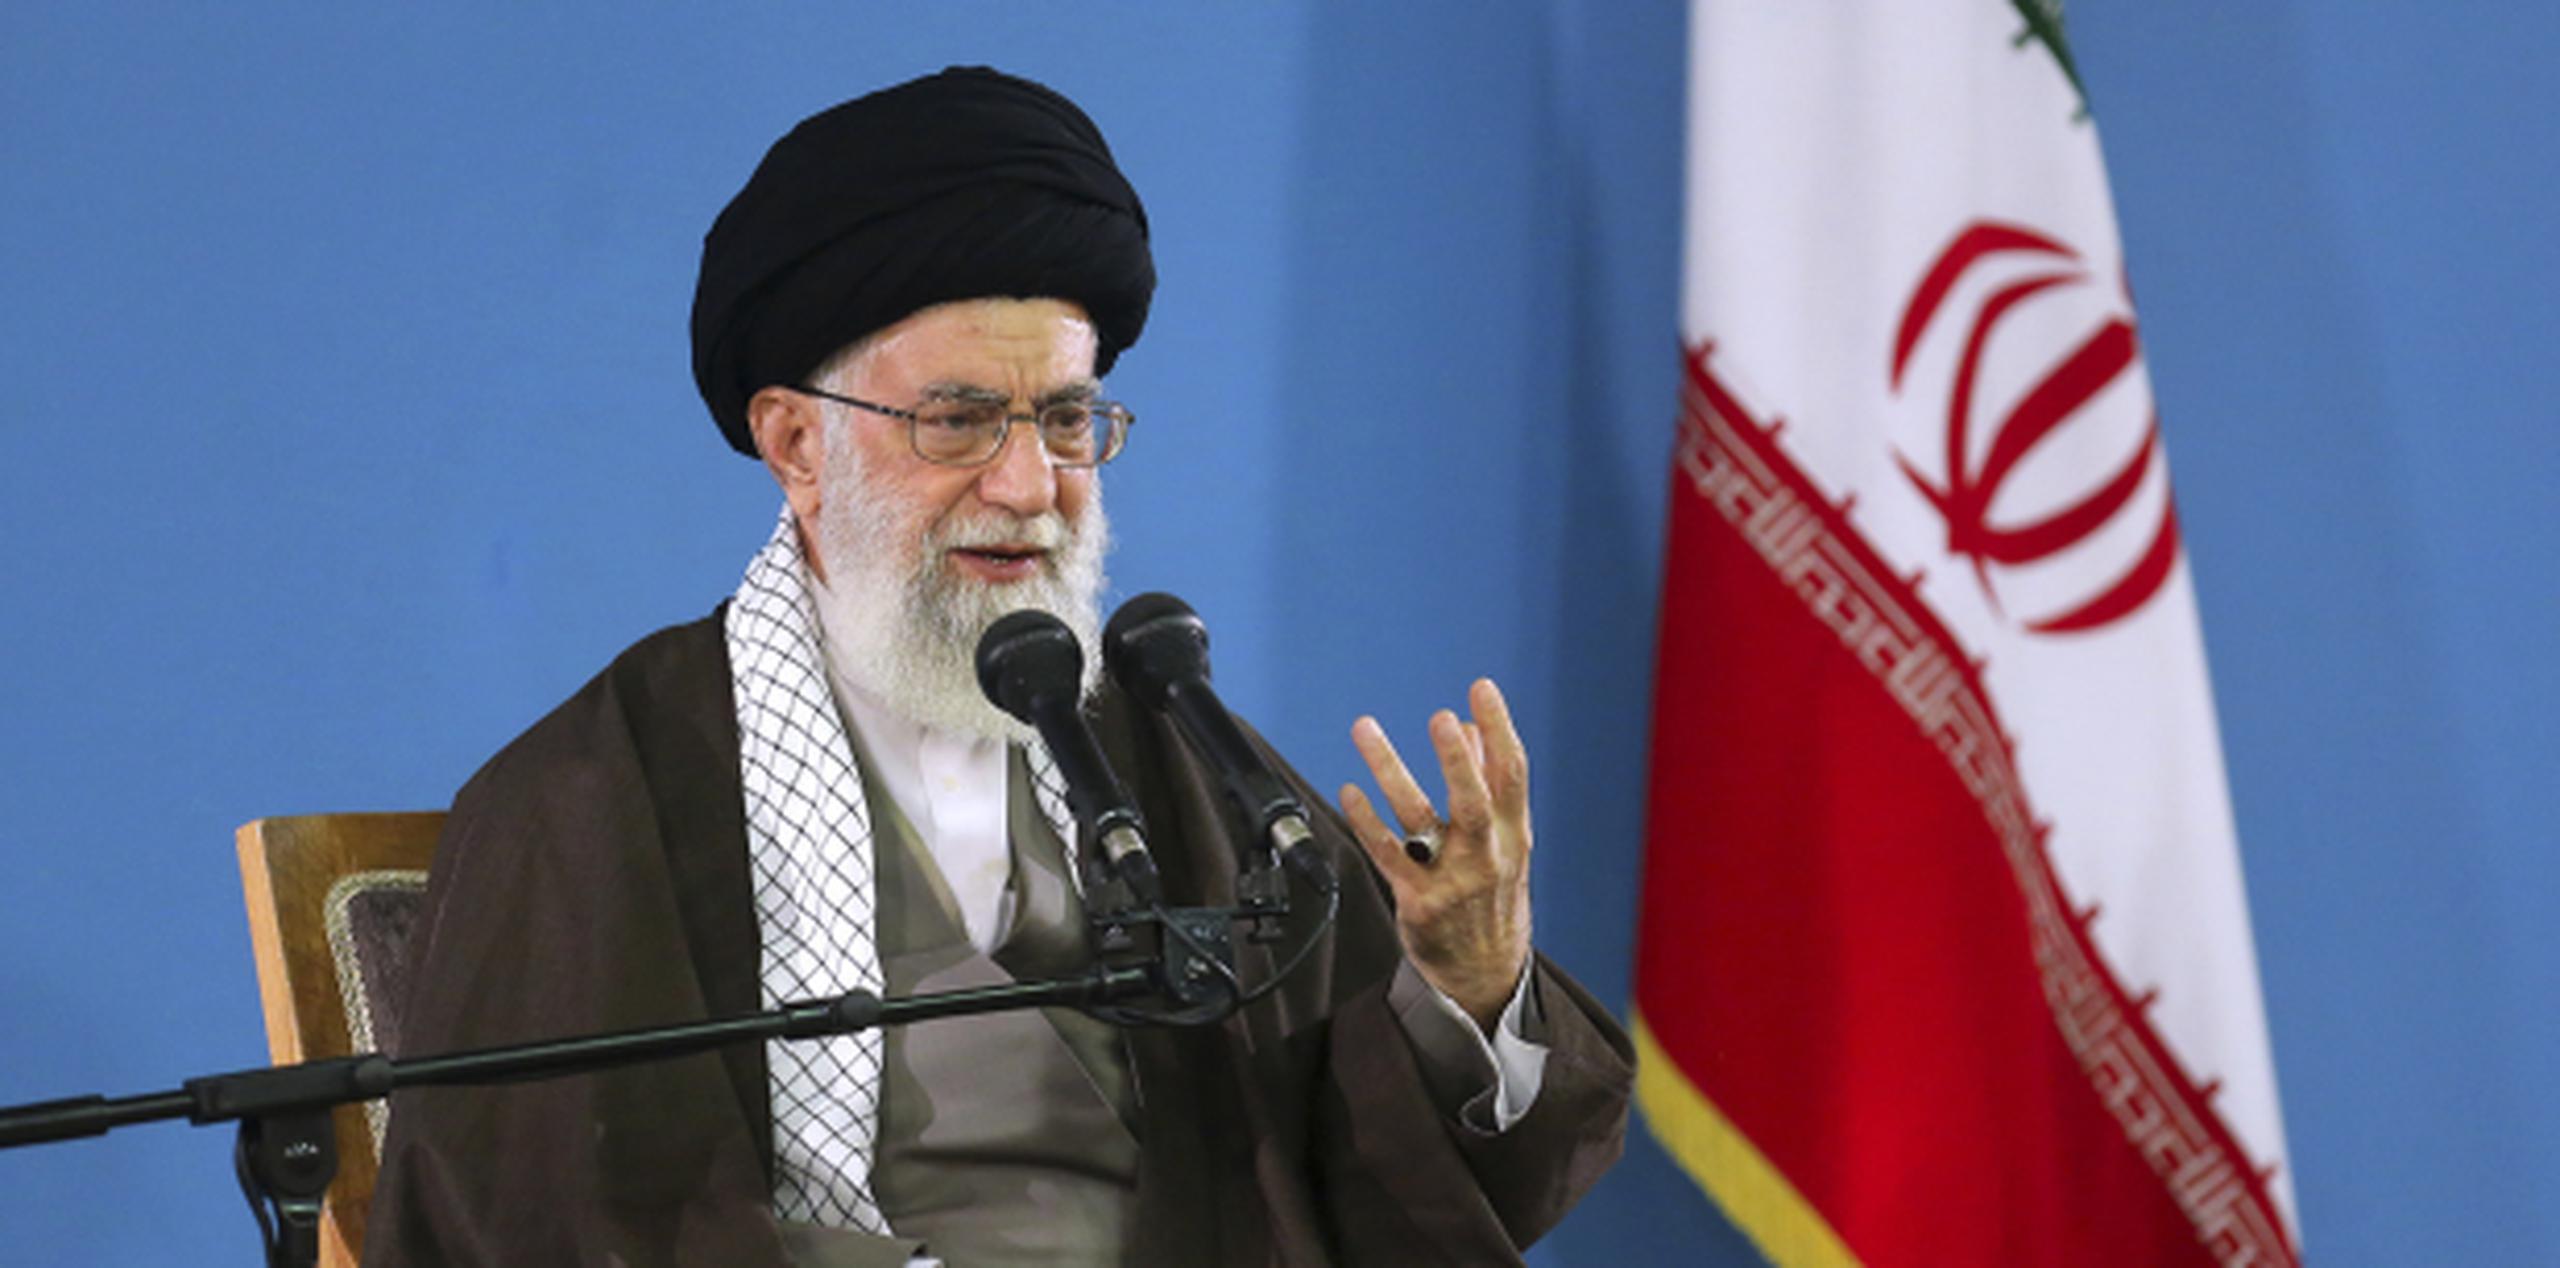 No va en contra del pueblo estadounidense sino contra las políticas estadounidenses, indicó el ayatola Ali Khamenei. (AP)